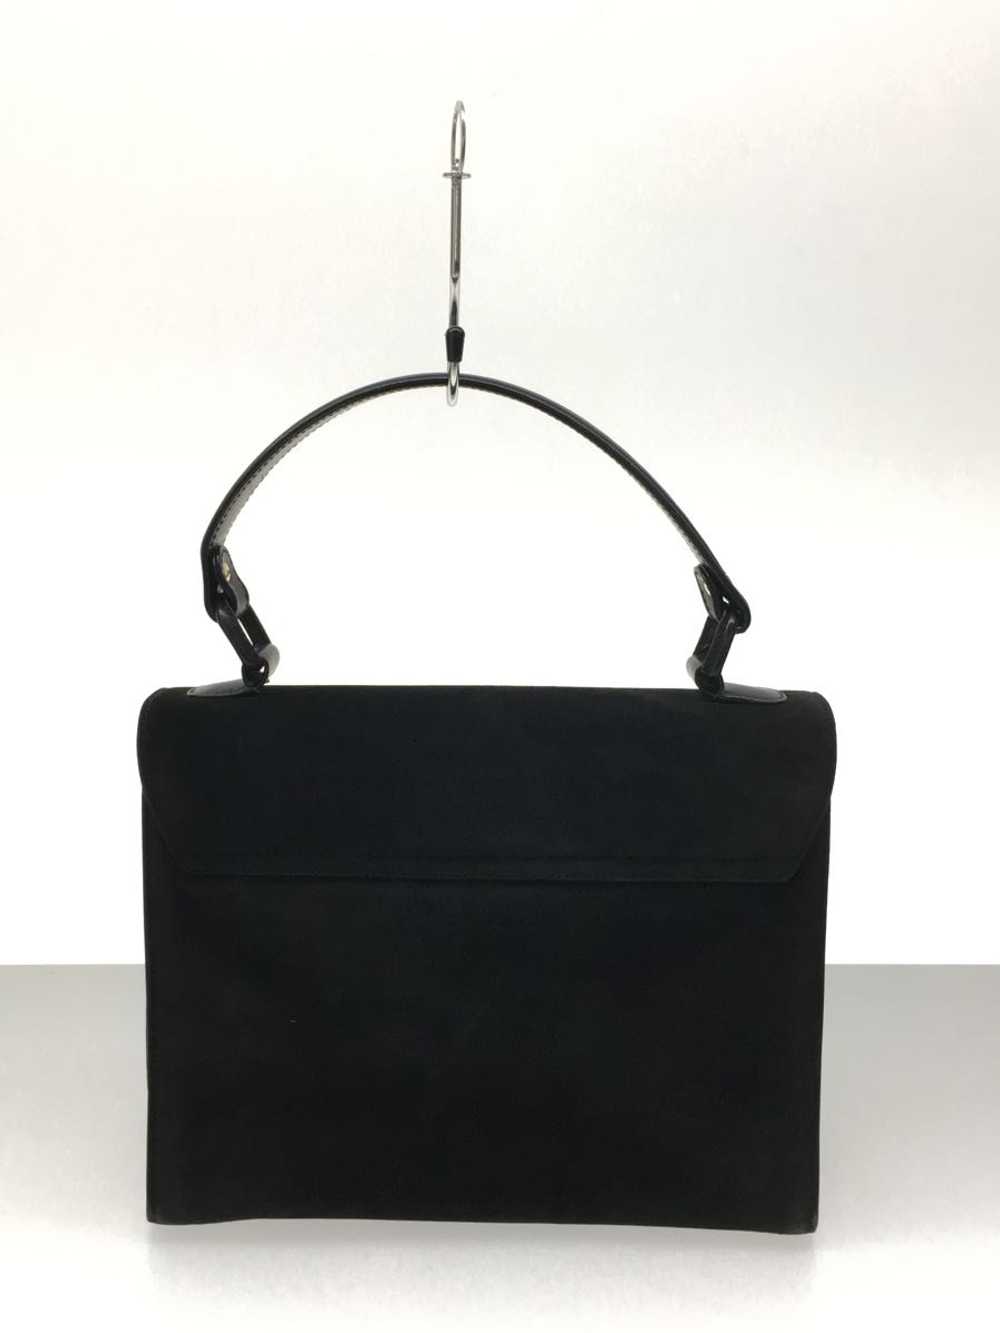 Gucci Handbag Leather Black Old Bag - image 4